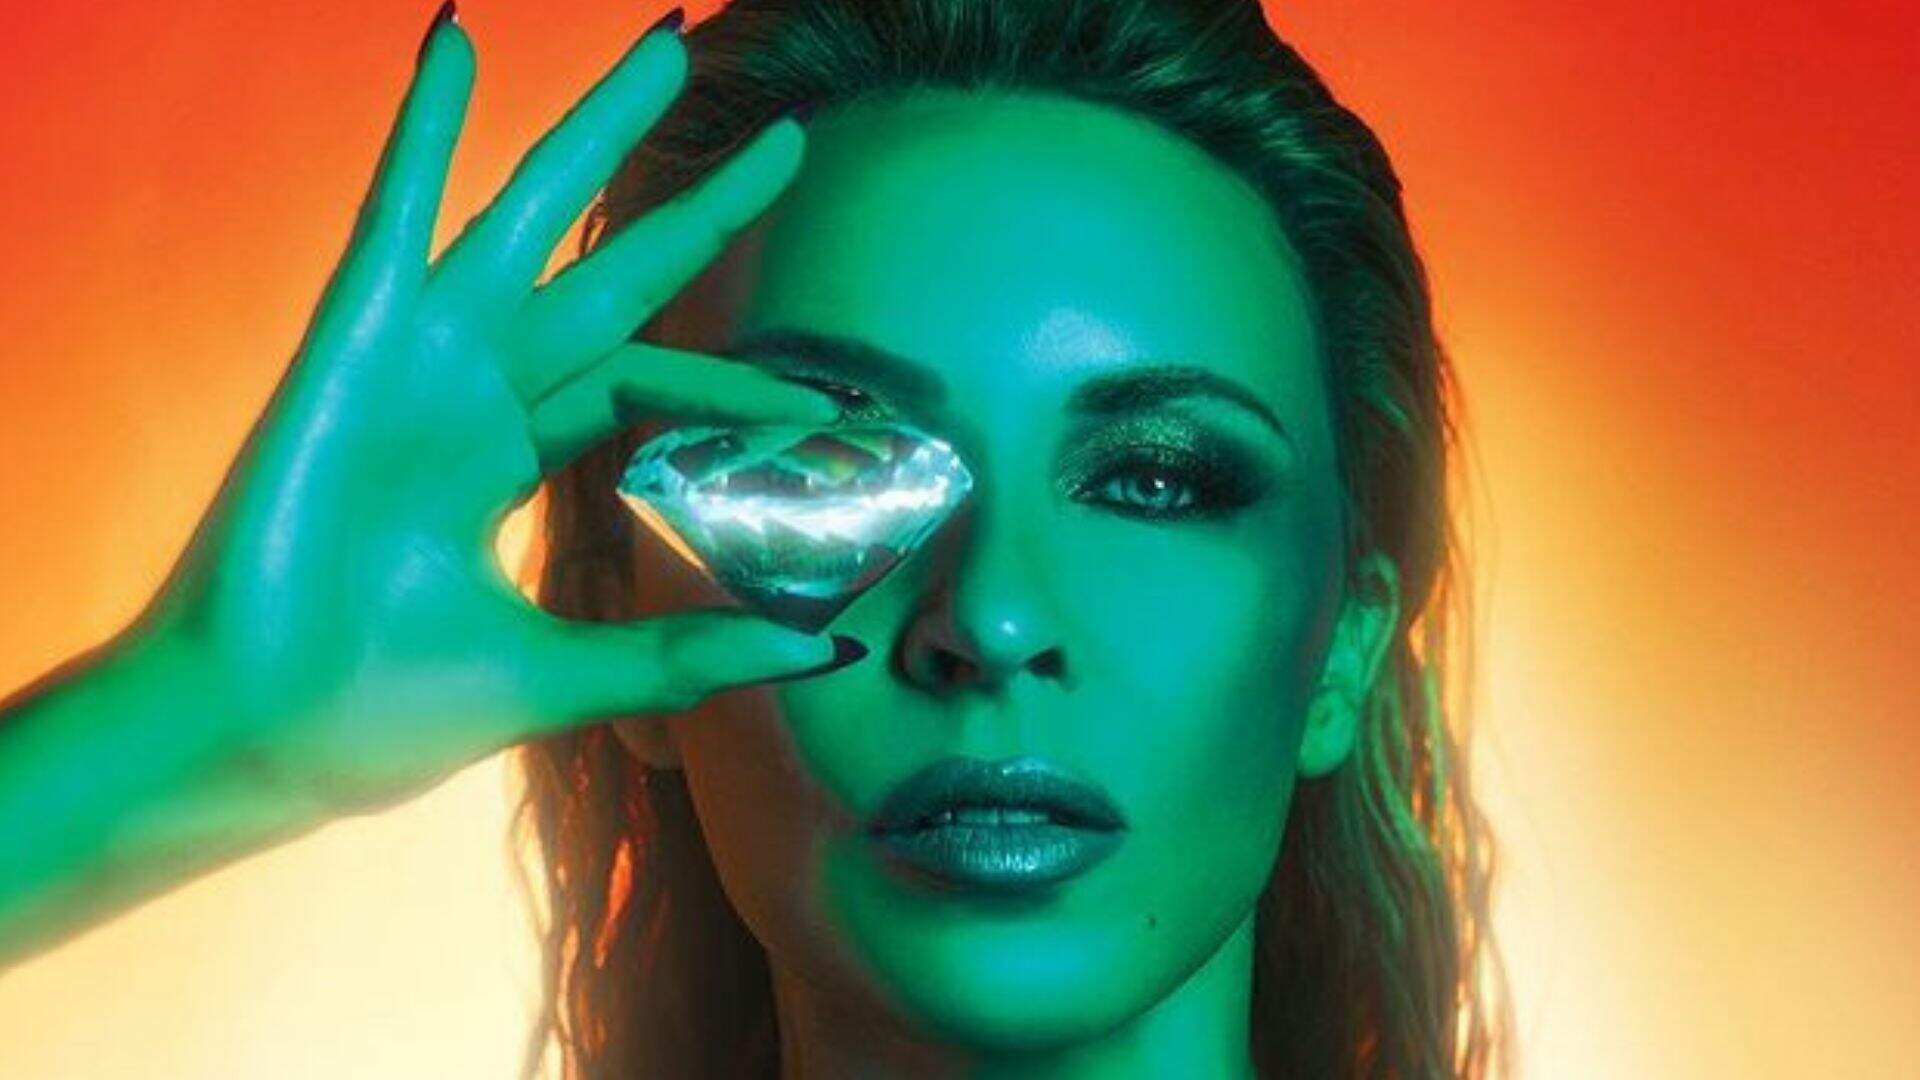 Kylie Minogue faz todo mundo dançar com álbum energético e empolgante do início ao fim; escute “Tension” - Metropolitana FM